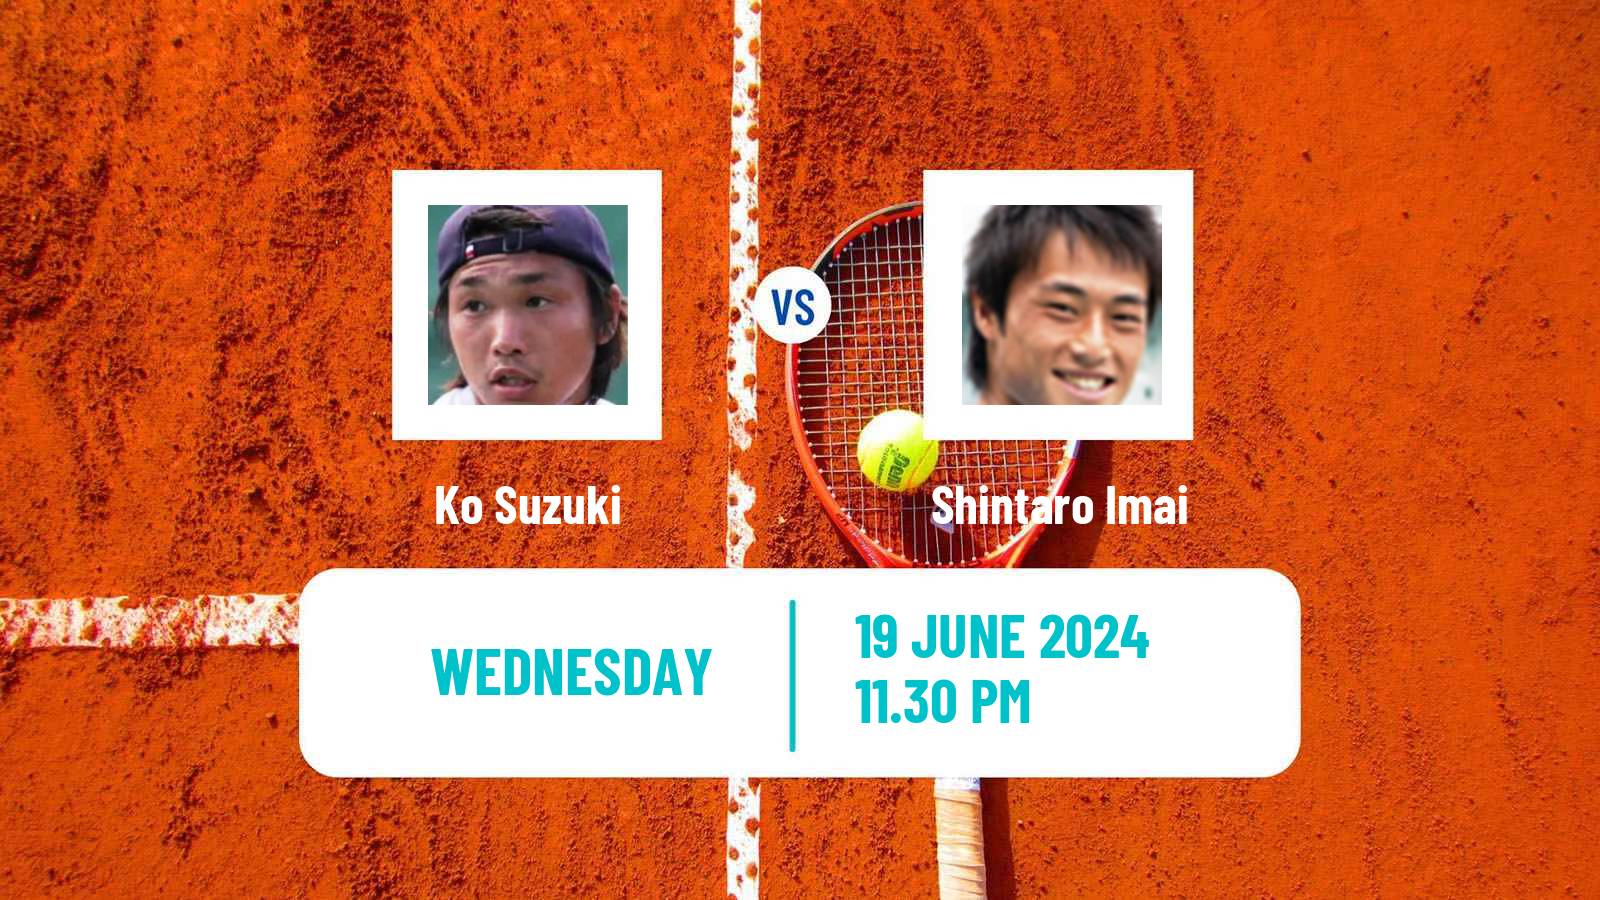 Tennis ITF M15 Hong Kong 2 Men Ko Suzuki - Shintaro Imai